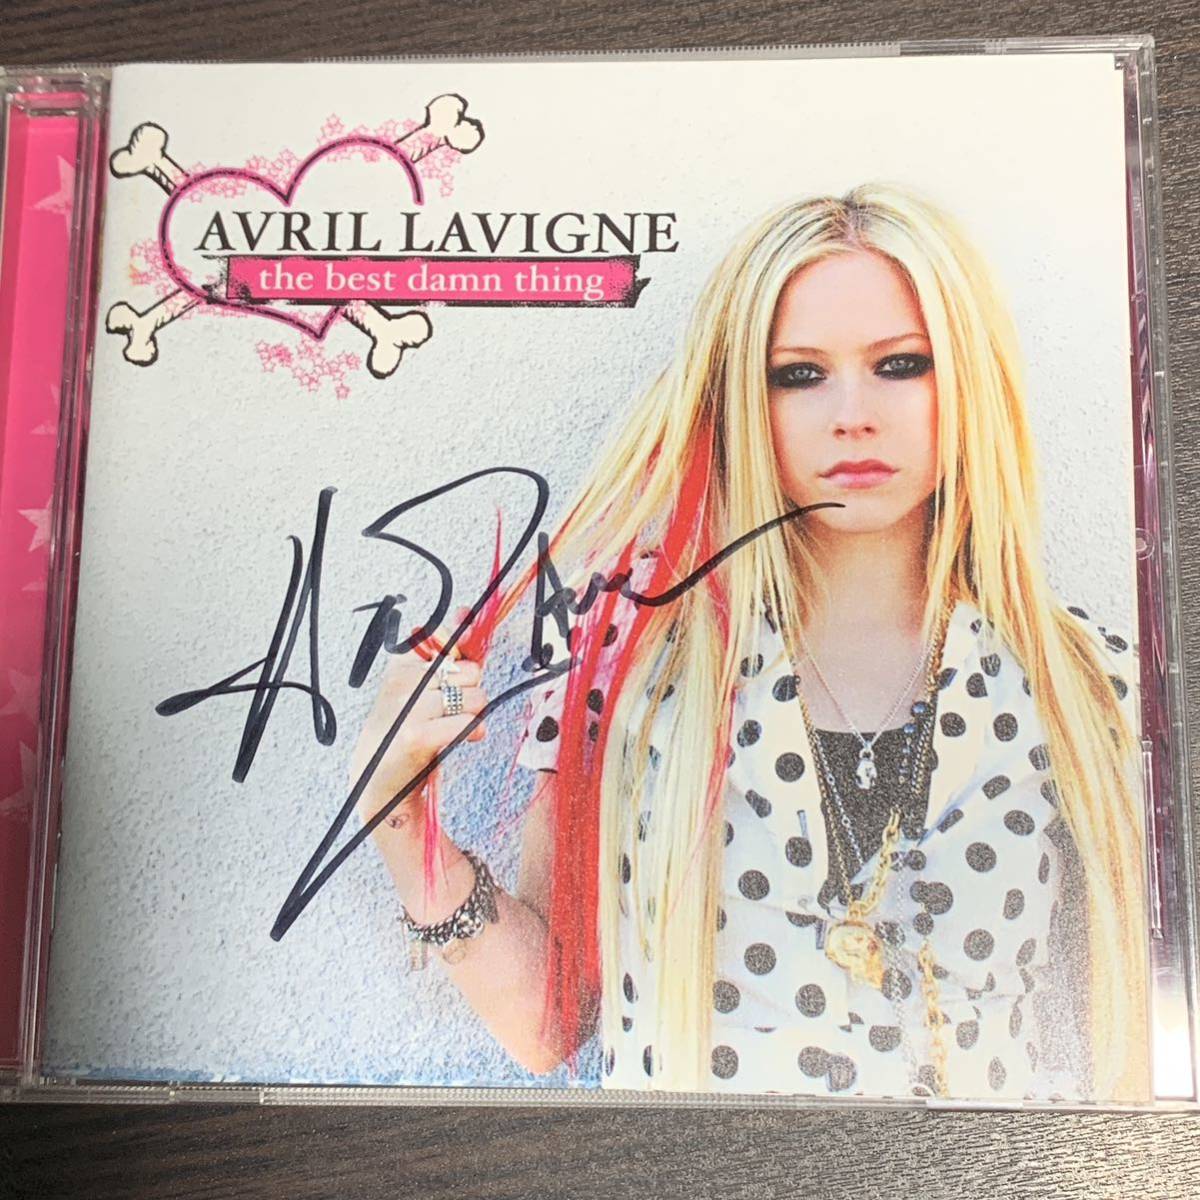 アヴリル・ラヴィーン Avril Lavigne サイン入りCD(中古)のヤフオク 